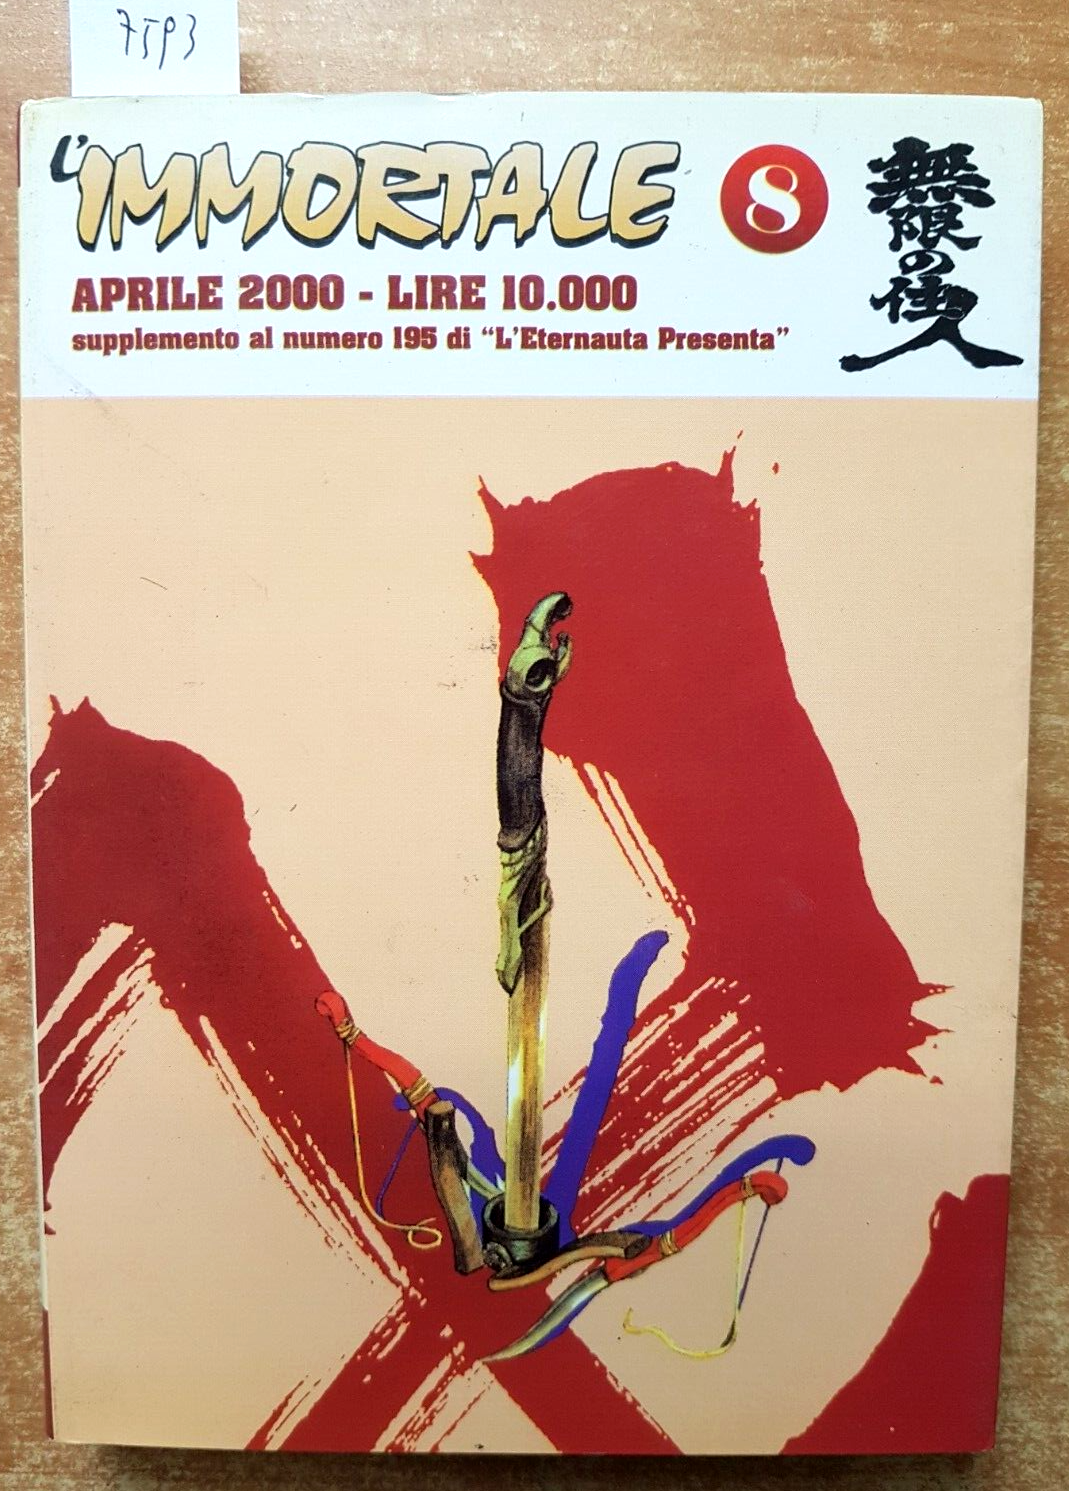 L\'IMMORTALE 8 - manga - HIROKI SAMURA - 2000 - COMICS ART PUBLISHING (7593